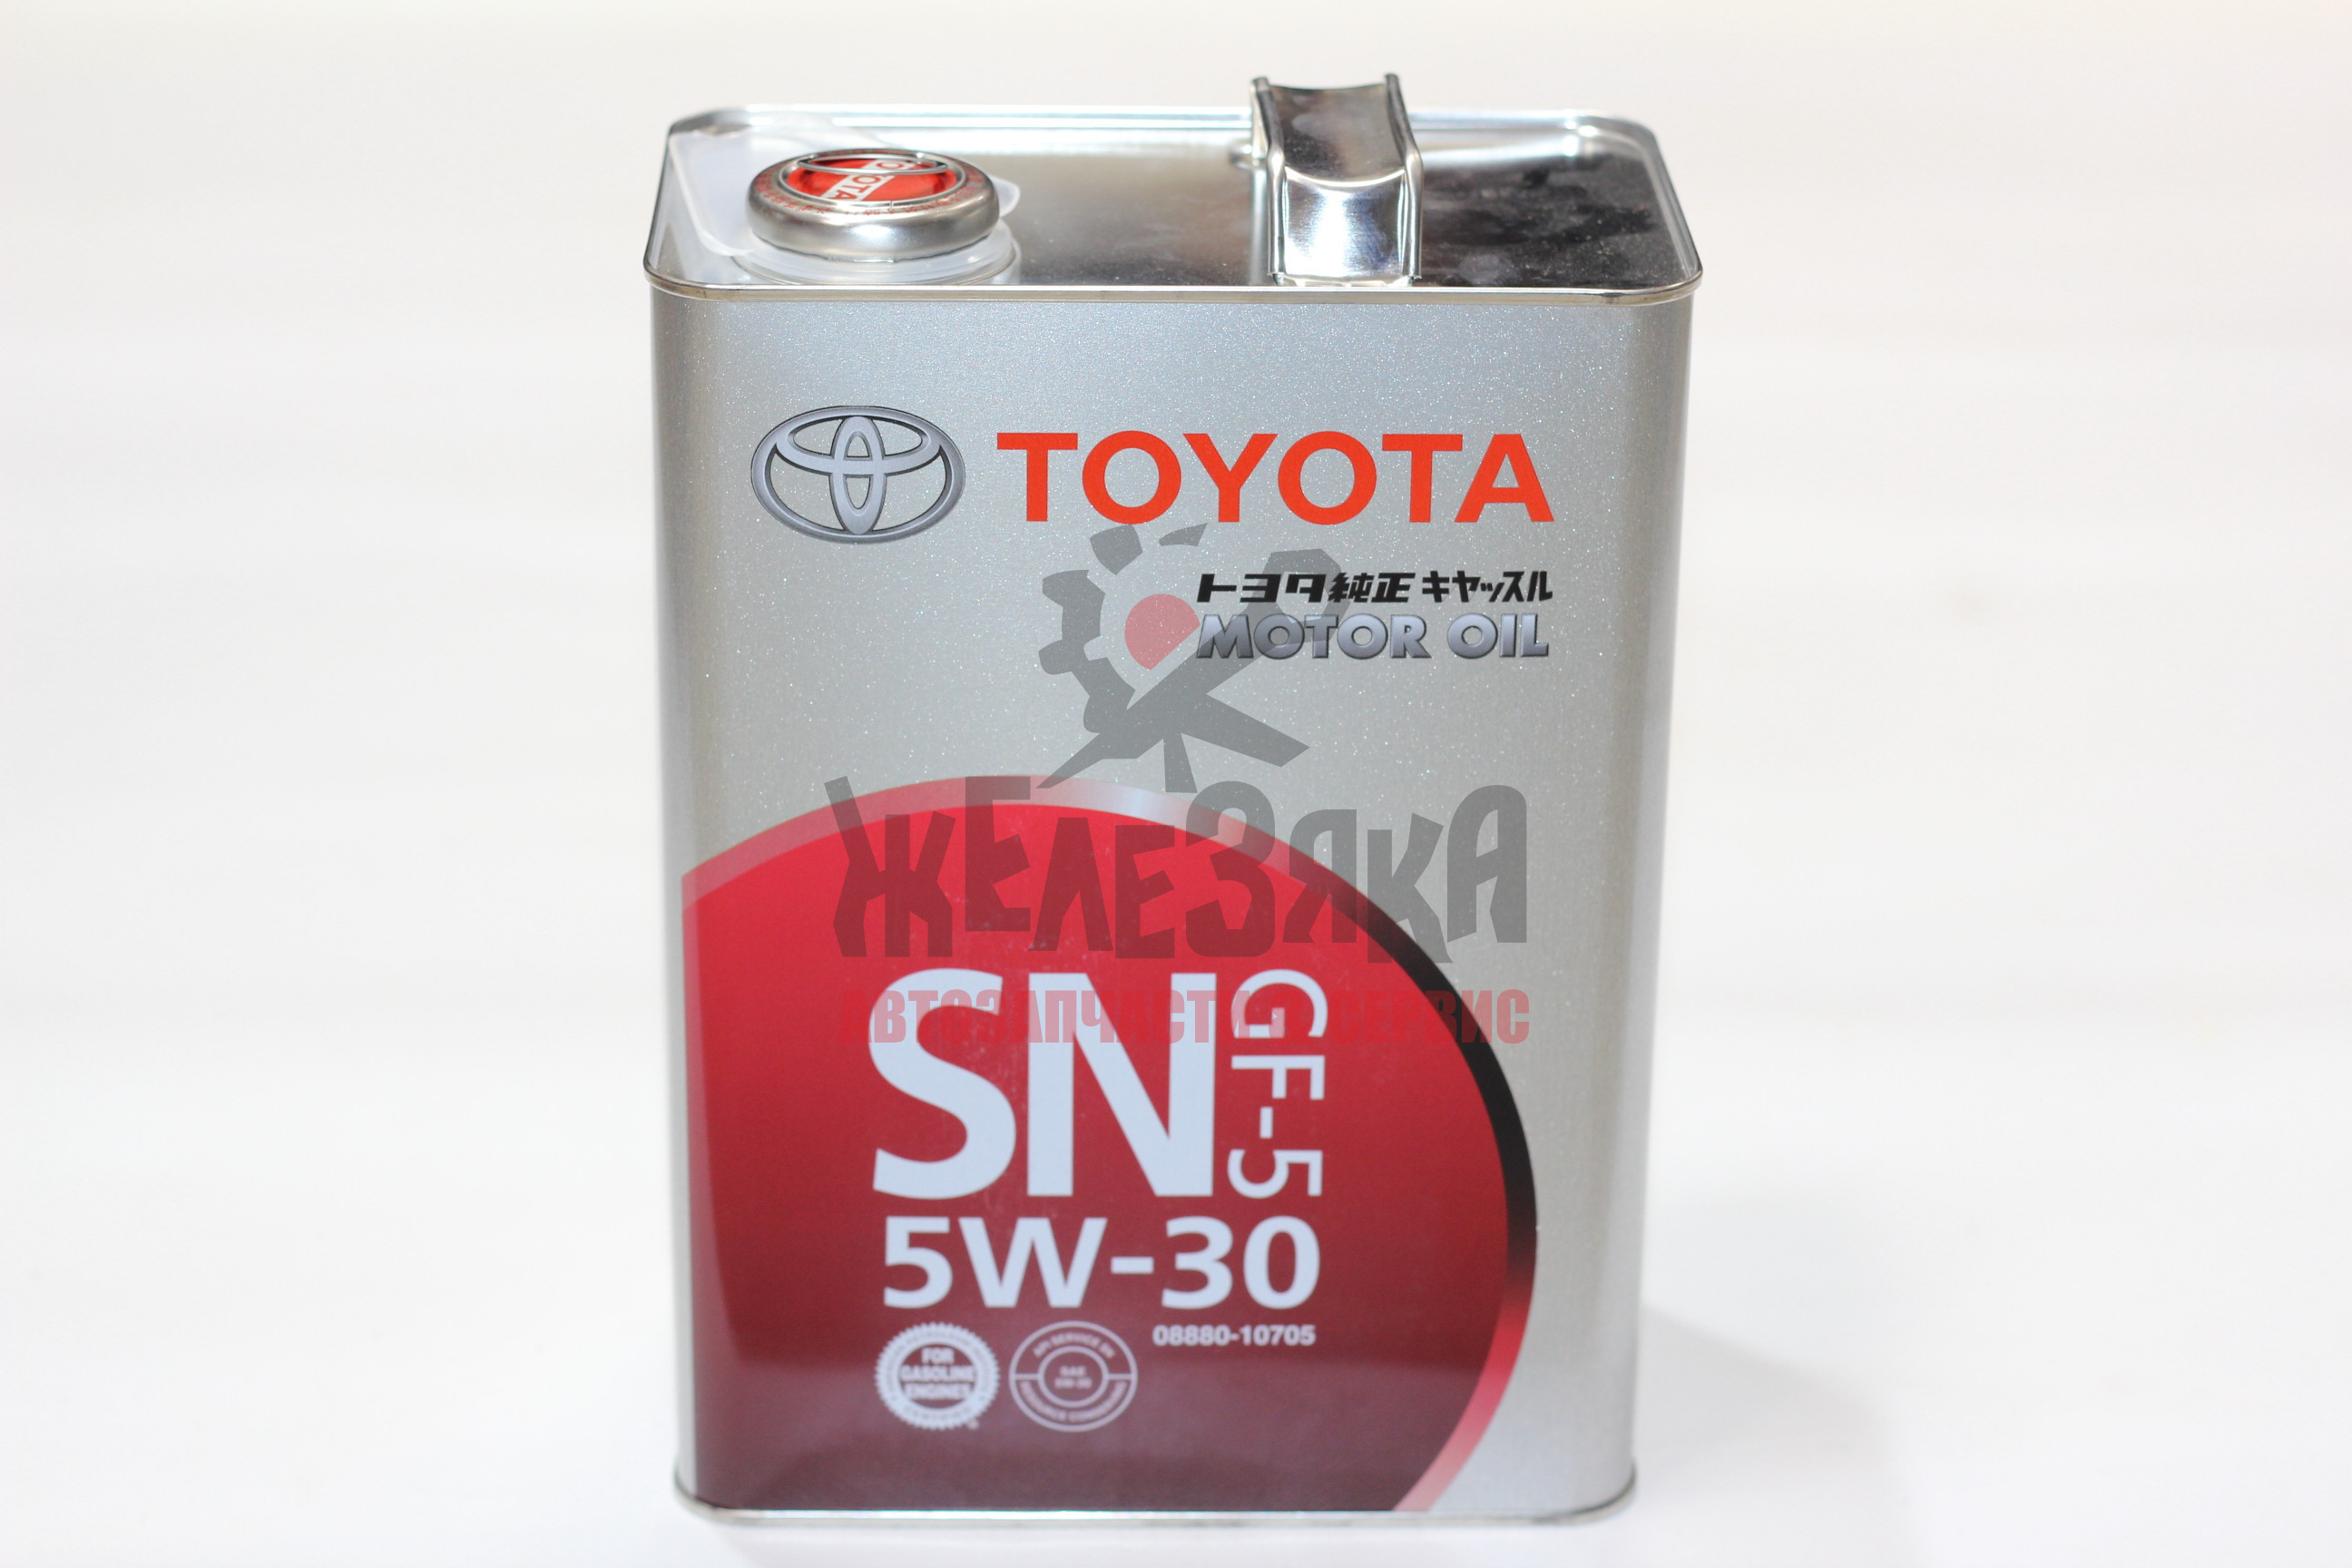 Toyota 5w30 4л. Toyota SN 5w-30 4 л. Toyota 08880-10705. Toyota Motor Oil SN 5w-30. Toyota 5w30 SN/CF gf-5 (4л).